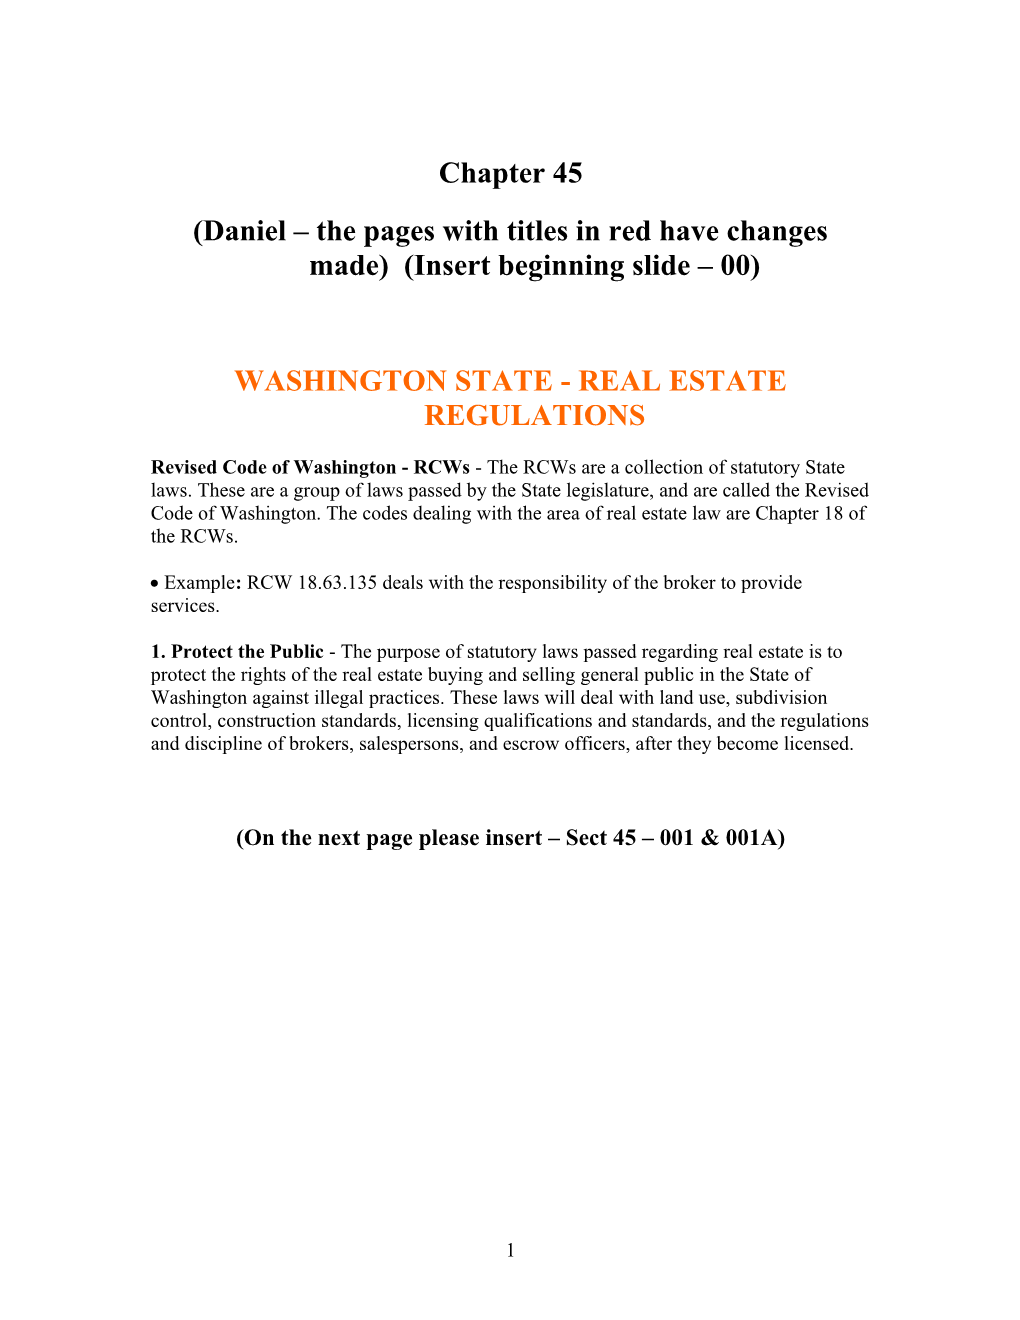 Washington State - Real Estate Regulations